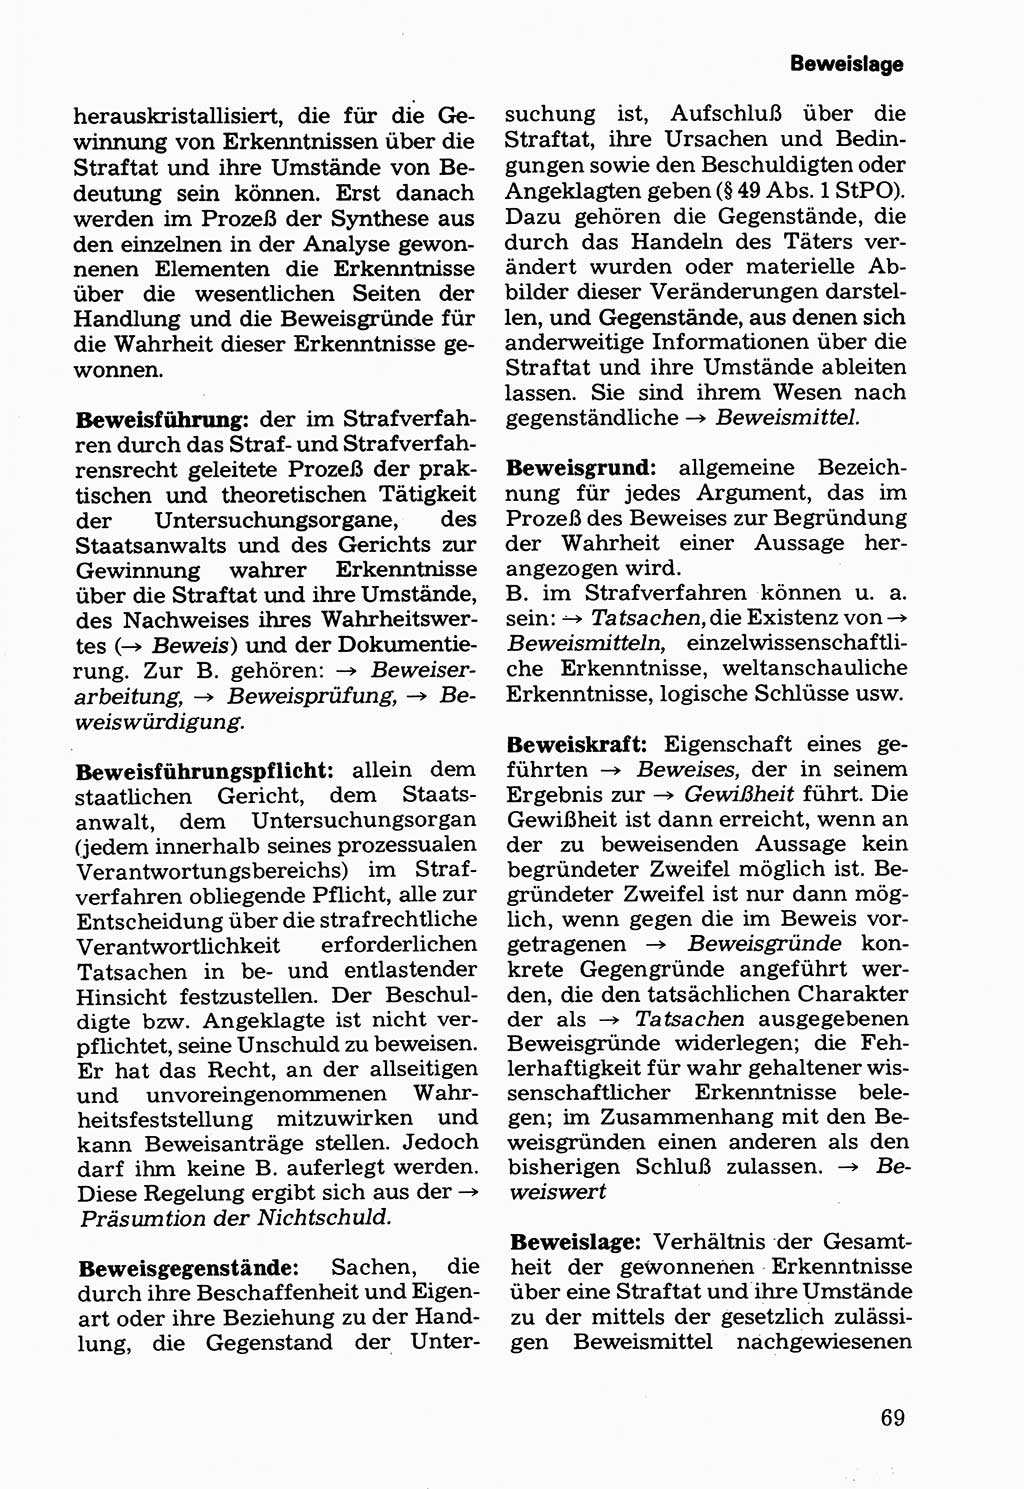 Wörterbuch der sozialistischen Kriminalistik [Deutsche Demokratische Republik (DDR)] 1981, Seite 69 (Wb. soz. Krim. DDR 1981, S. 69)